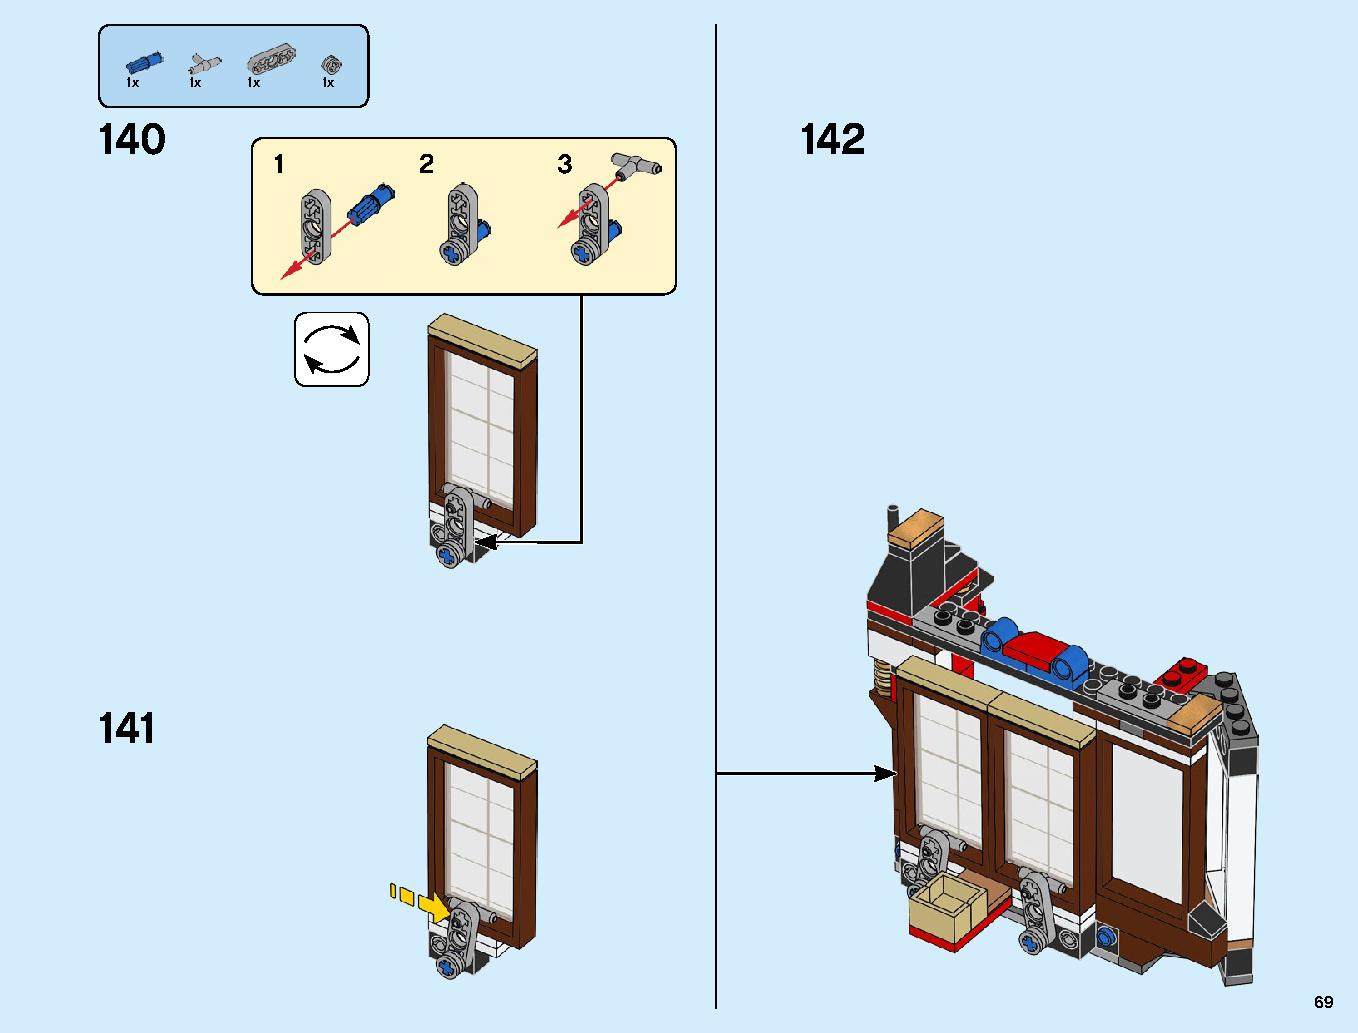 ニンジャ道場 70670 レゴの商品情報 レゴの説明書・組立方法 69 page